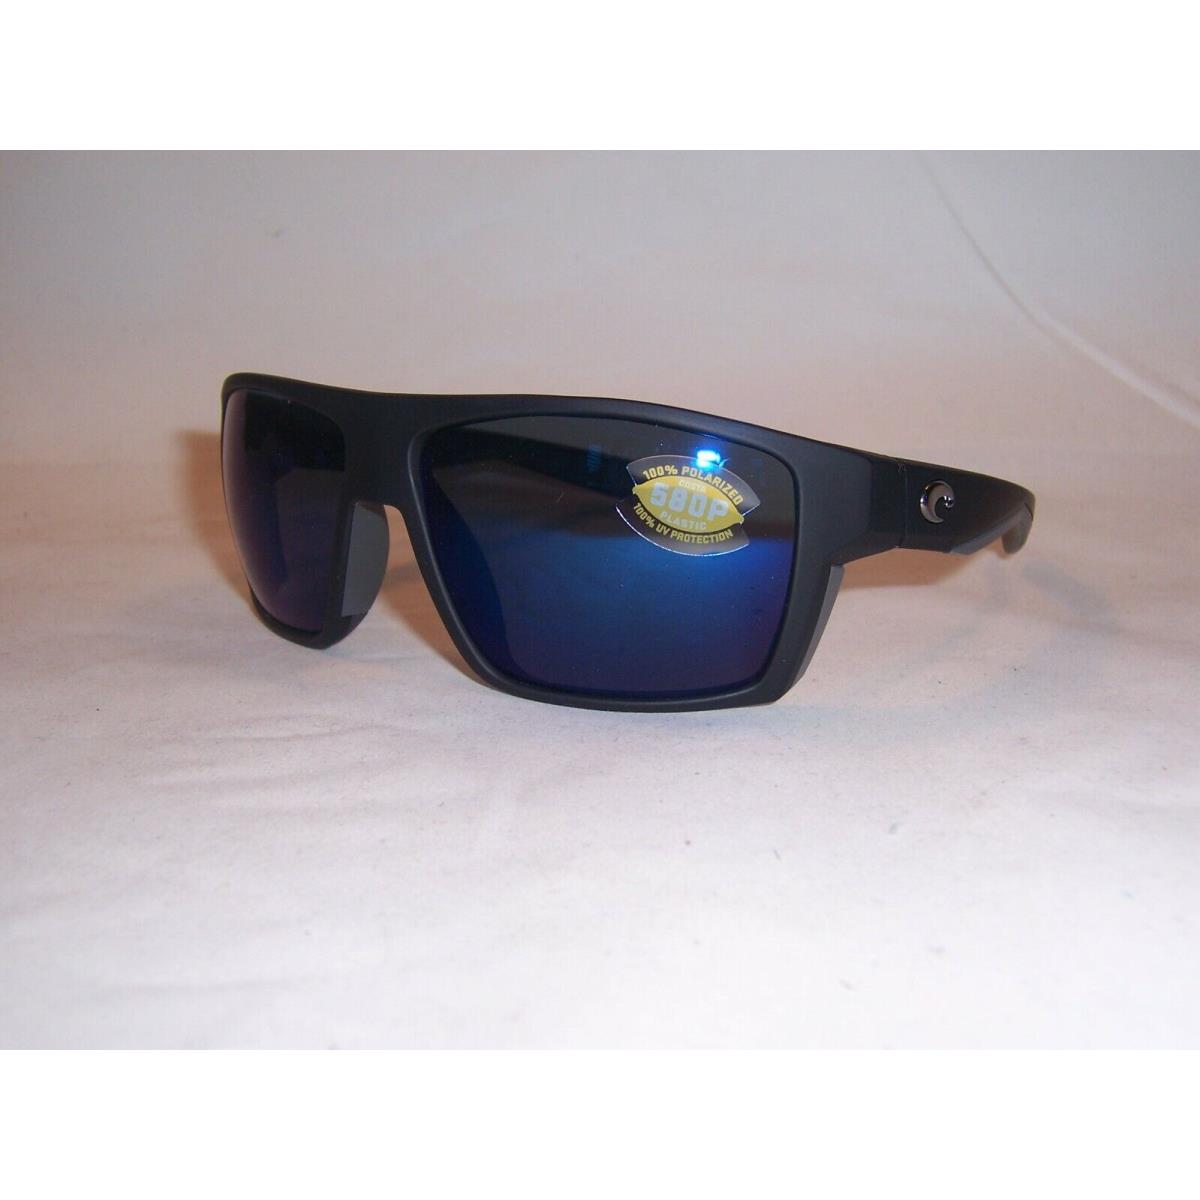 Costa Del Mar sunglasses Bloke - Black Gray Frame, Blue Lens 1